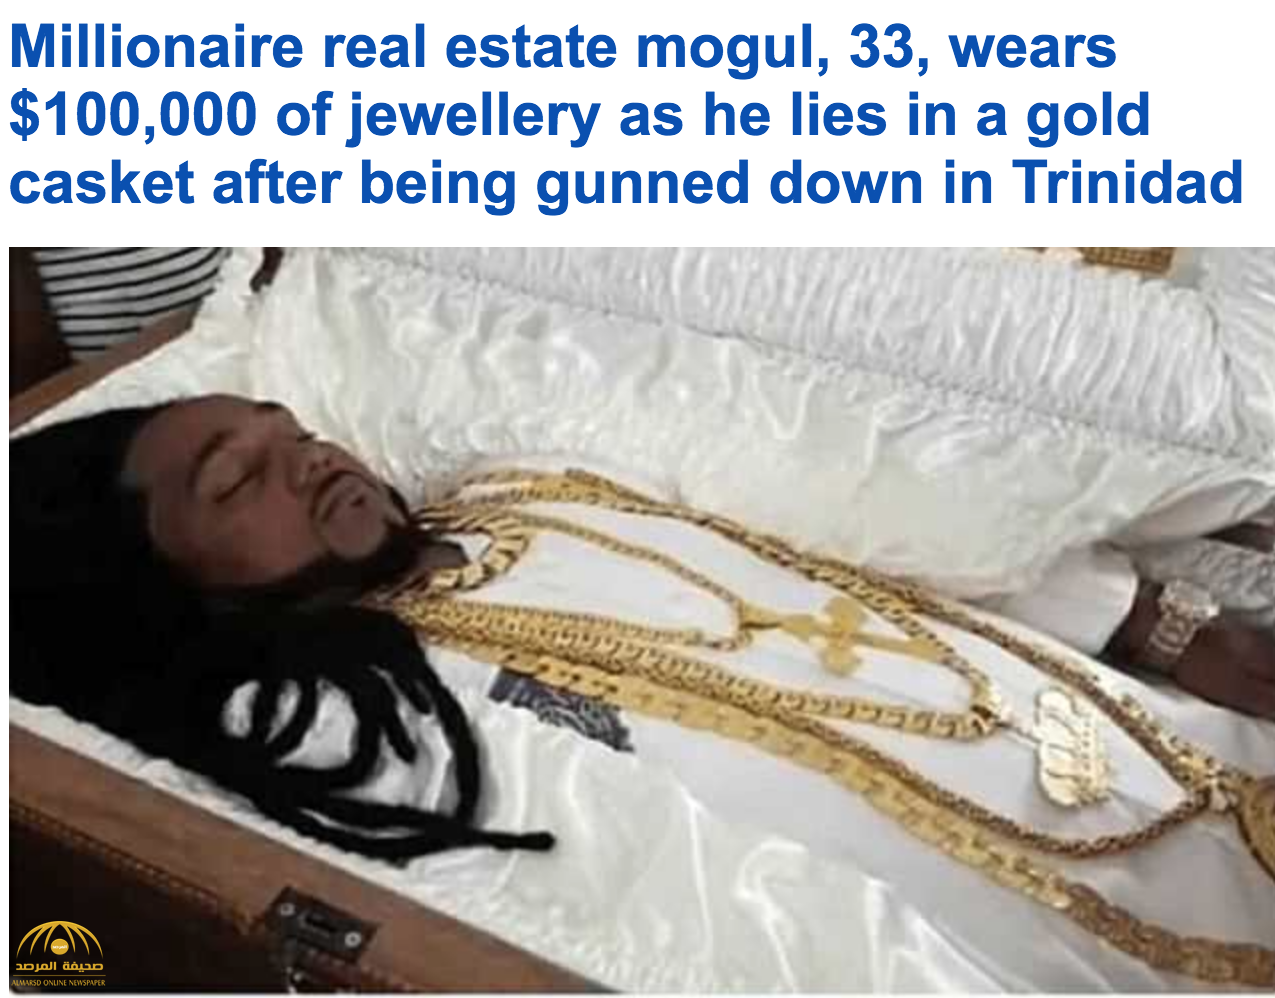 بالصور: شاهد مليونير "ترينيدادي" شاب يتم تأبينه مرتديا المجوهرات وداخل تابوت ذهبي